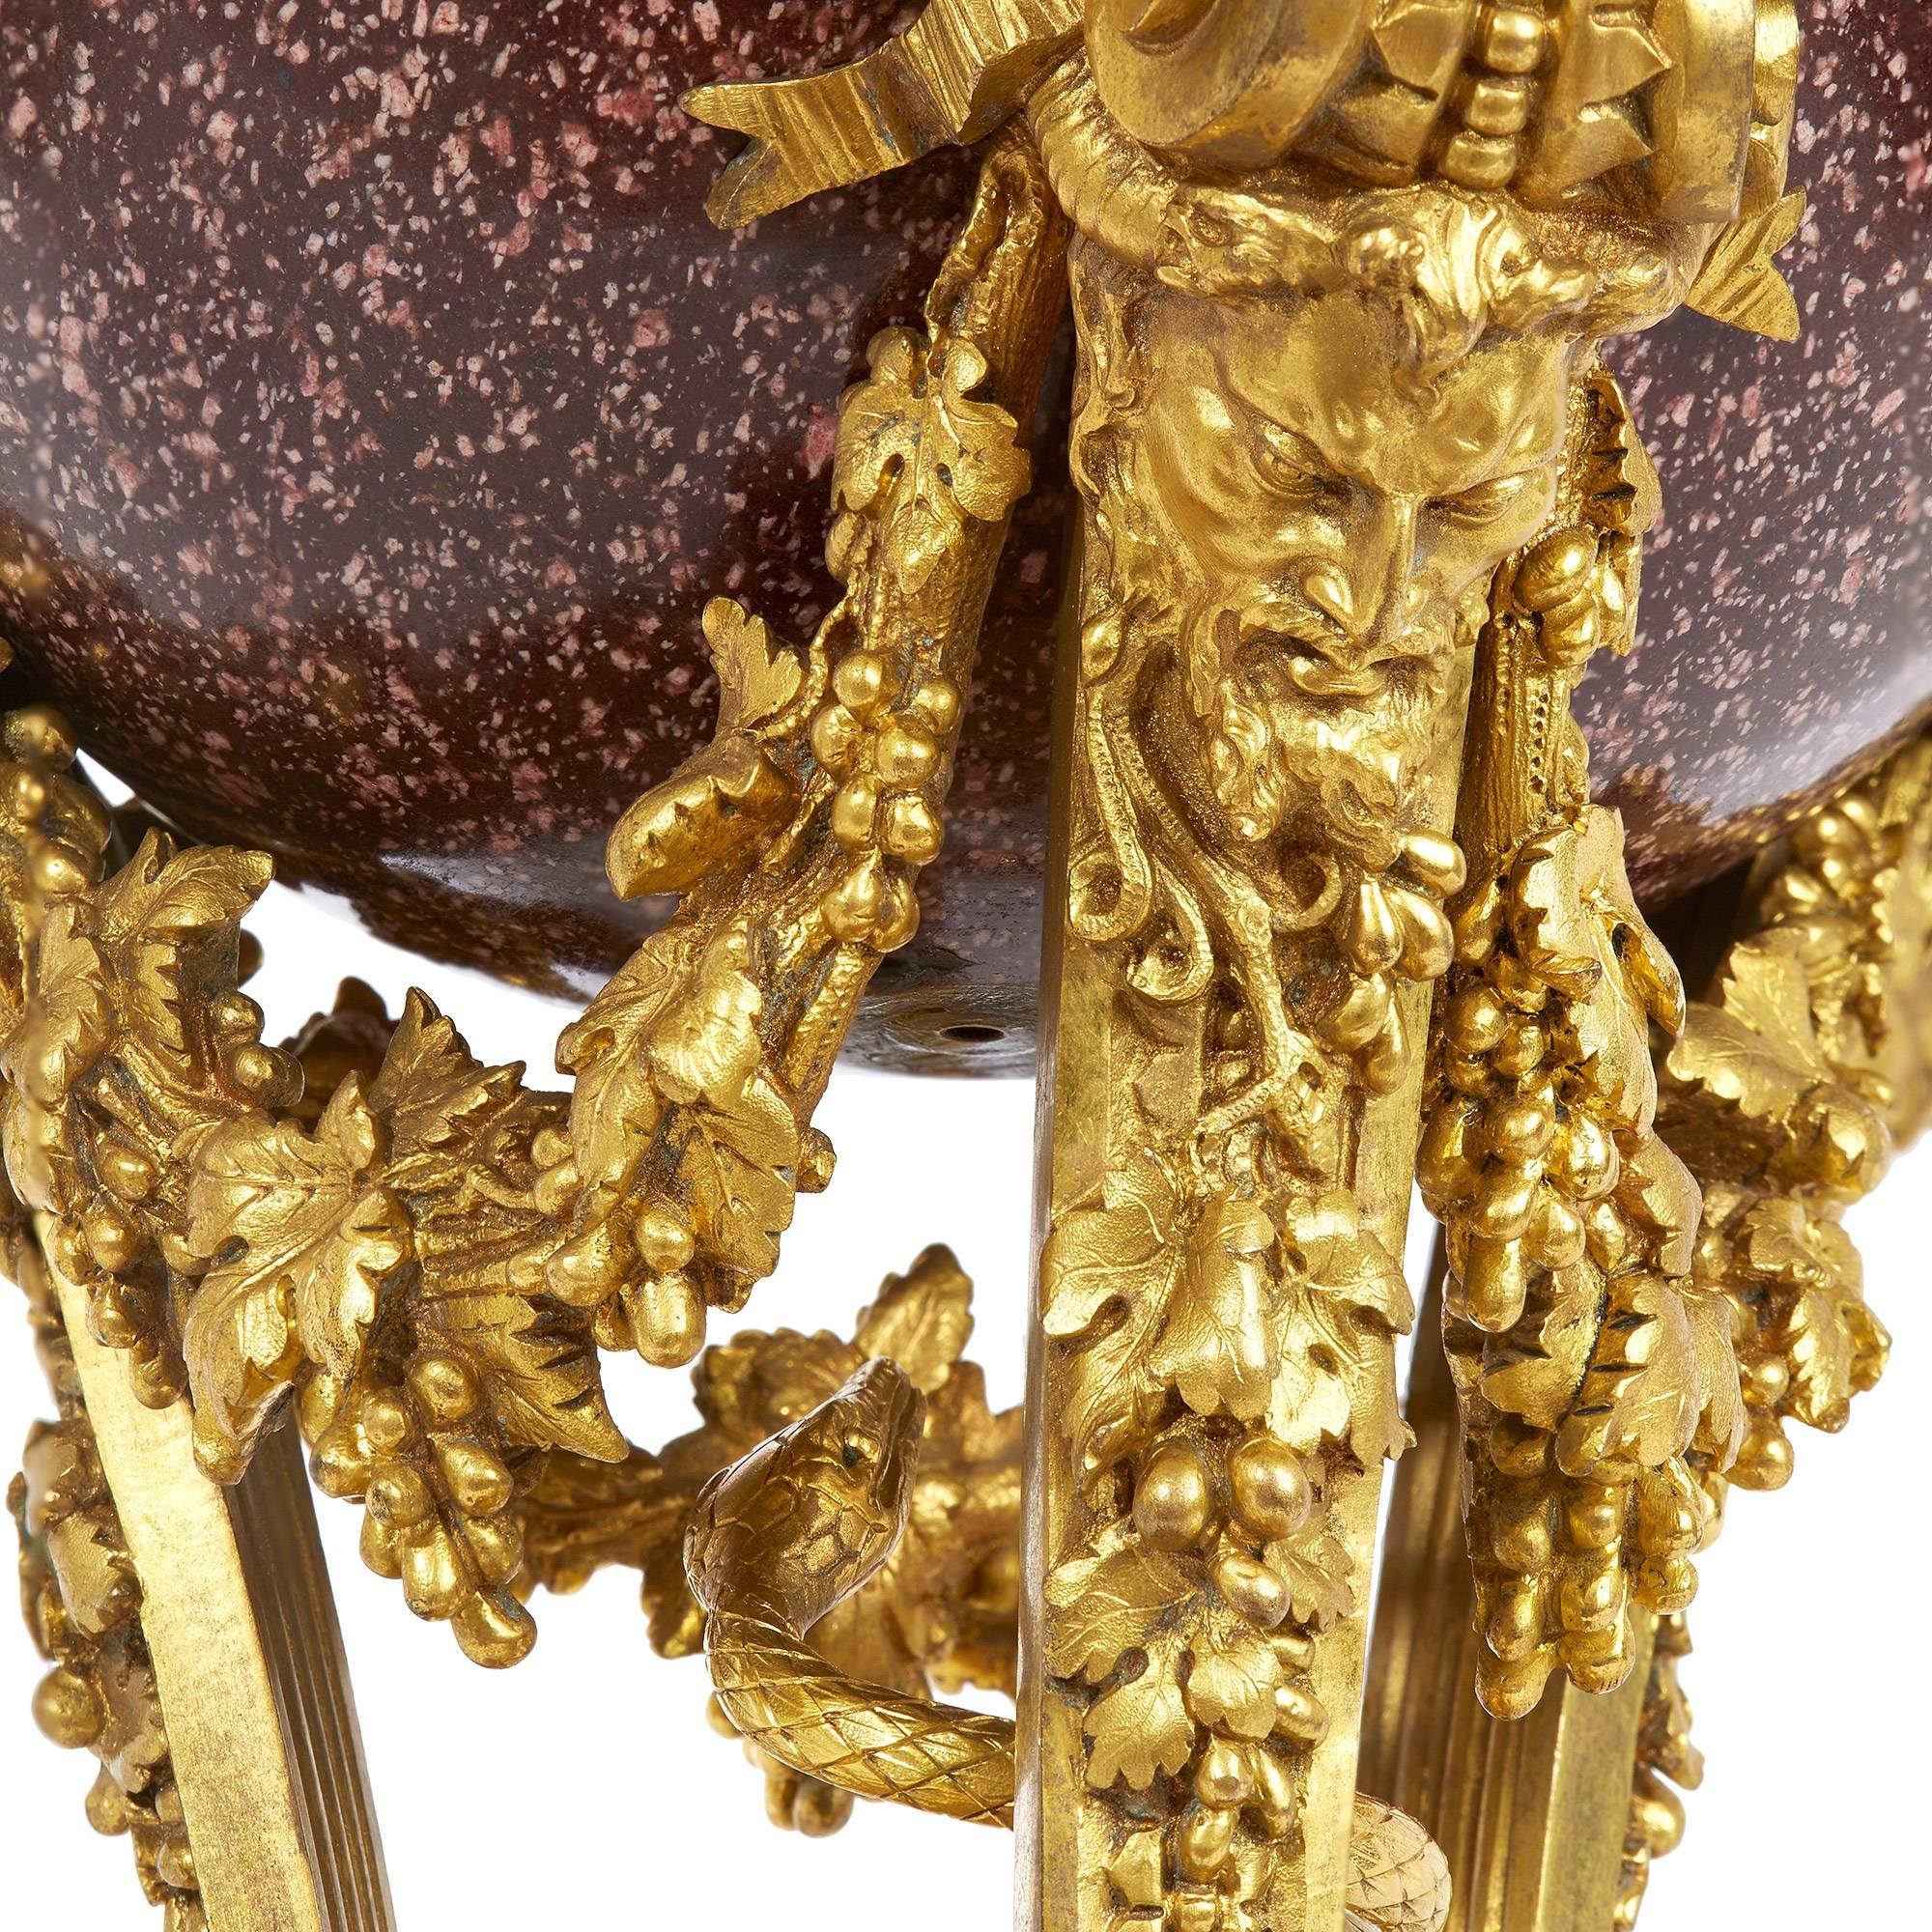 Diese atemberaubende antike Kaminsimsuhr zeichnet sich durch ihr schlangenförmiges Design aus, mit einem hängenden Schlangenkopf aus vergoldeter Bronze, der als Uhrzeiger dient.

Das um 360 Grad drehbare, kreisförmige Emailzifferblatt mit